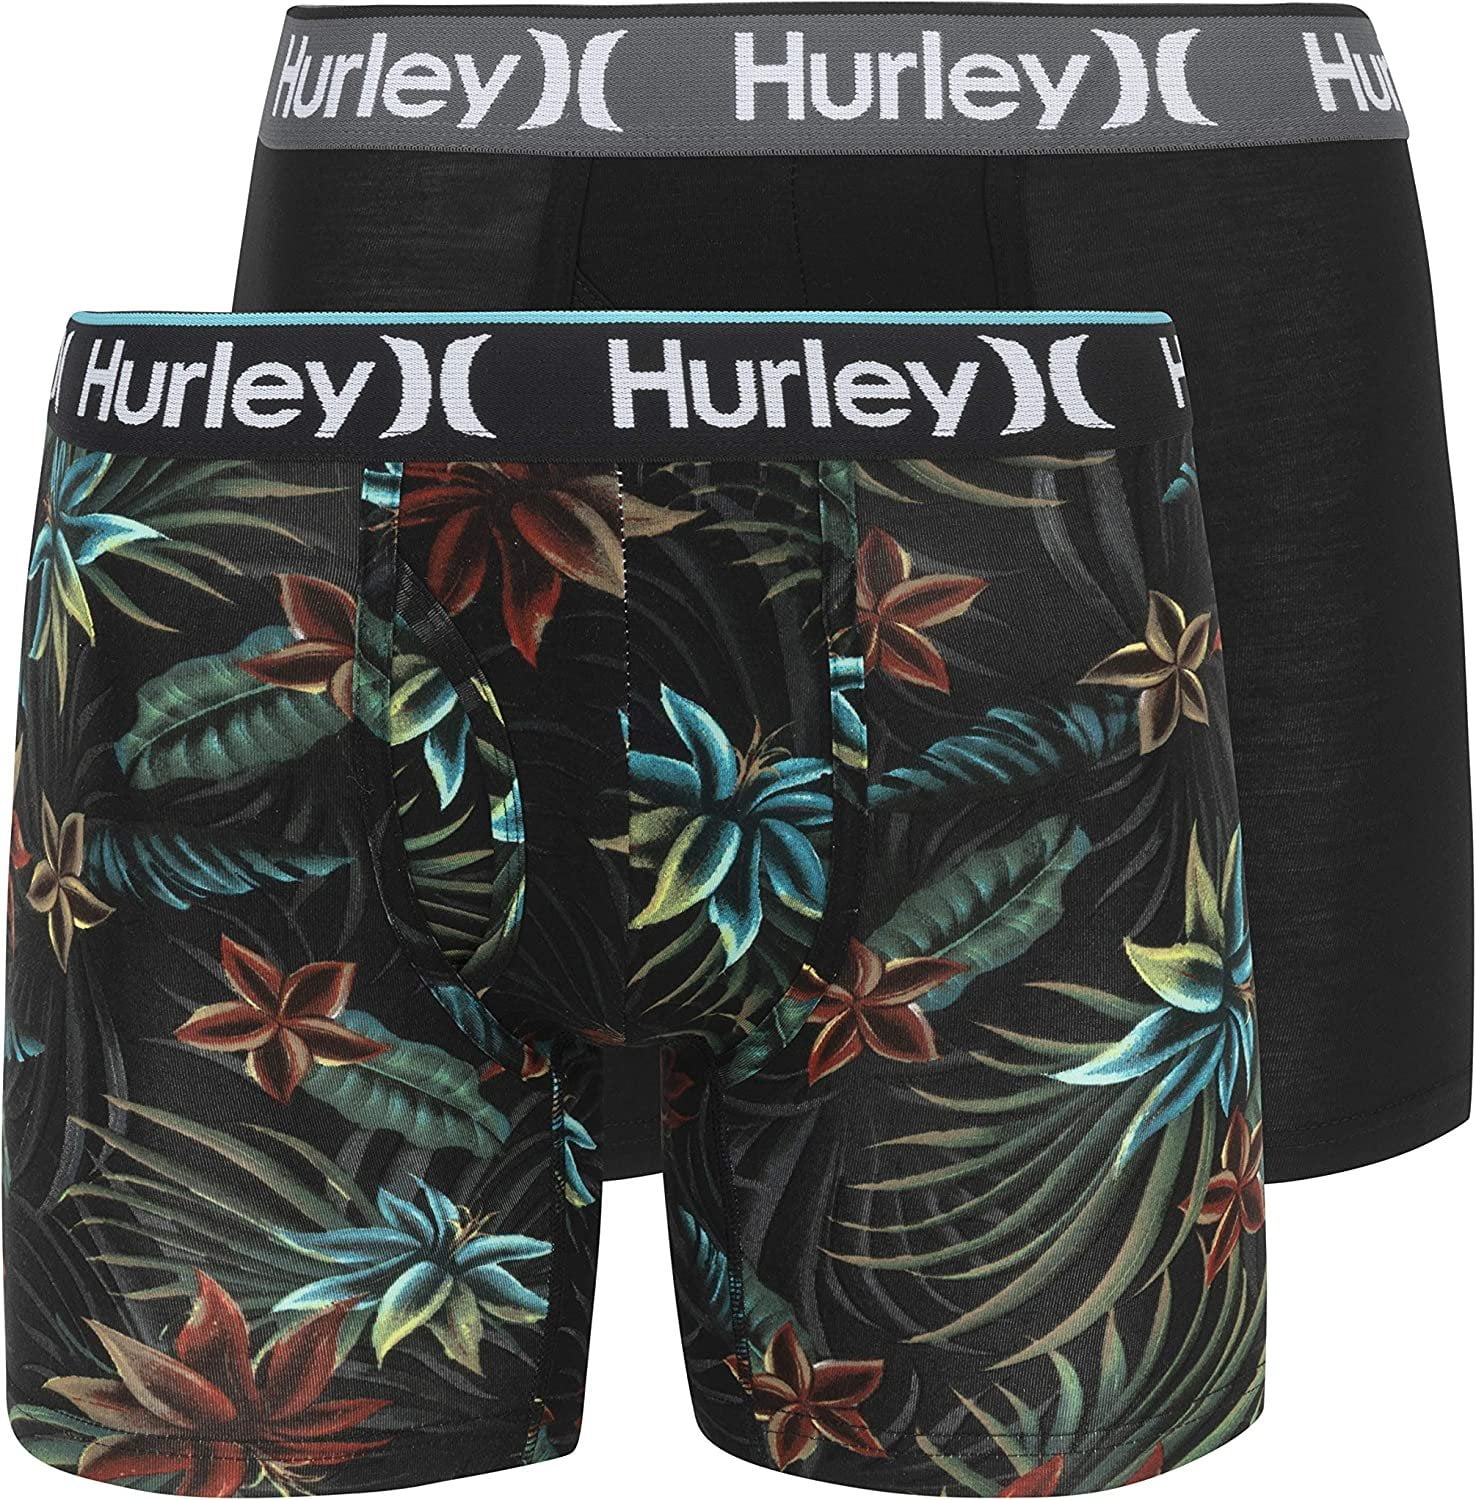 account schrijven Componeren Hurley Men's 2 Pack Everyday Boxer Briefs - HSP21M15394 - Walmart.com